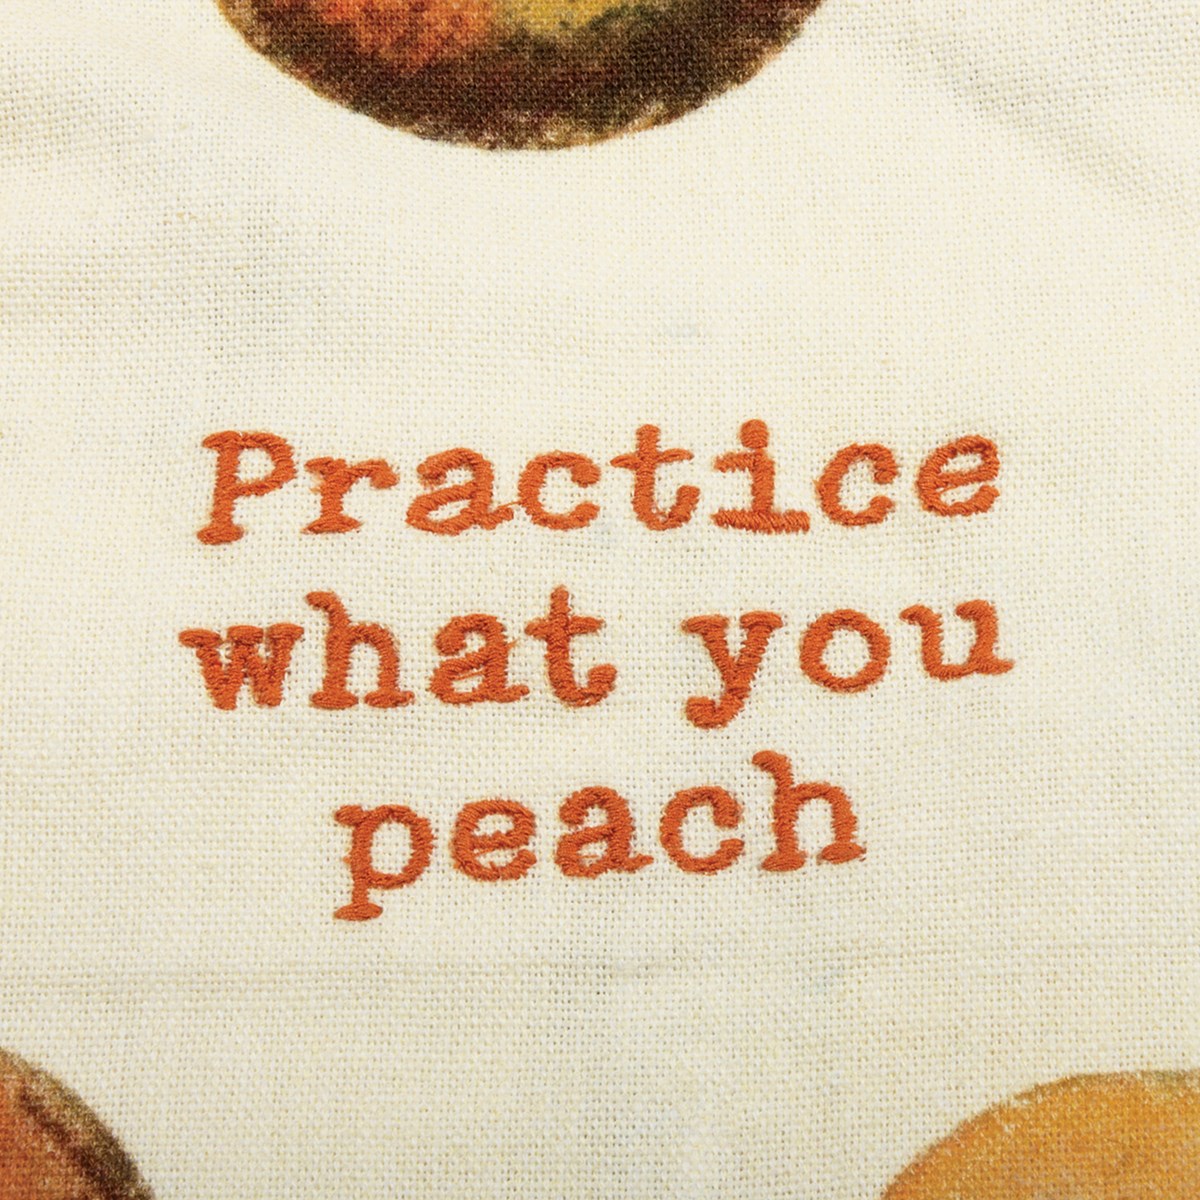 Practice What You Peach Kitchen Towel - Cotton, Linen